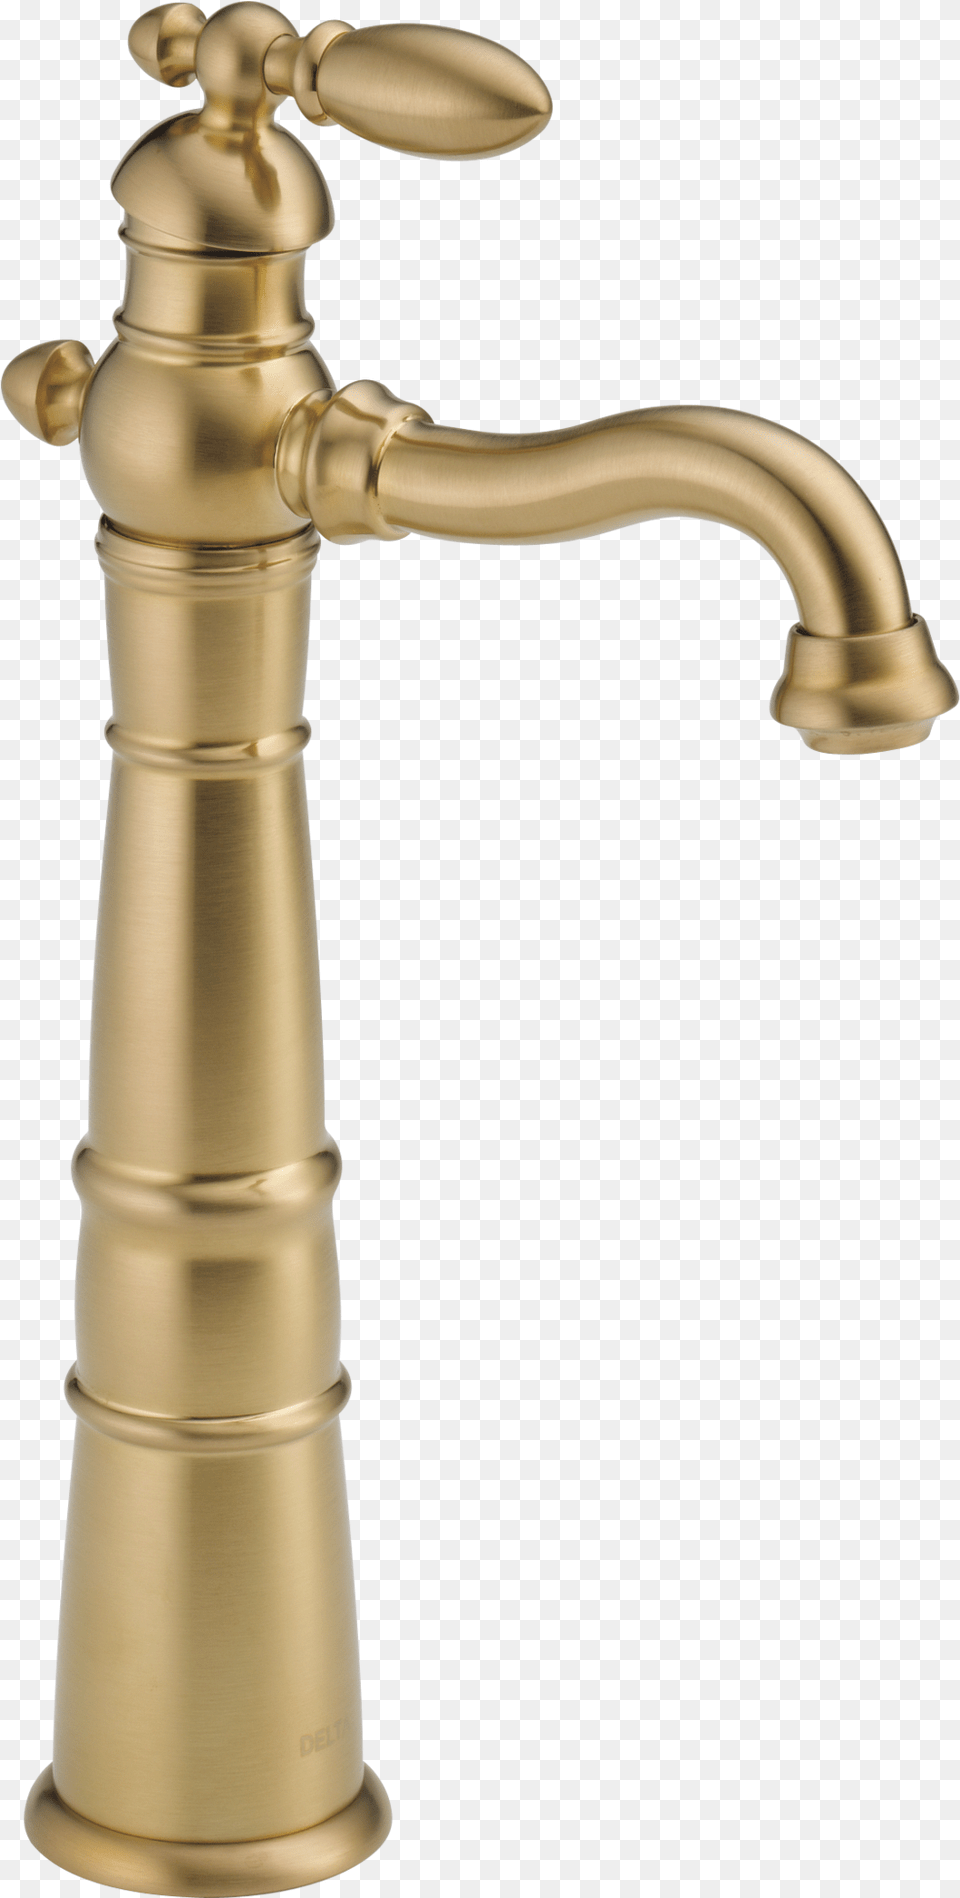 Delta Faucet 755lf Cz Single Handle Vessel Bathroom, Bronze, Sink, Sink Faucet, Tap Png Image